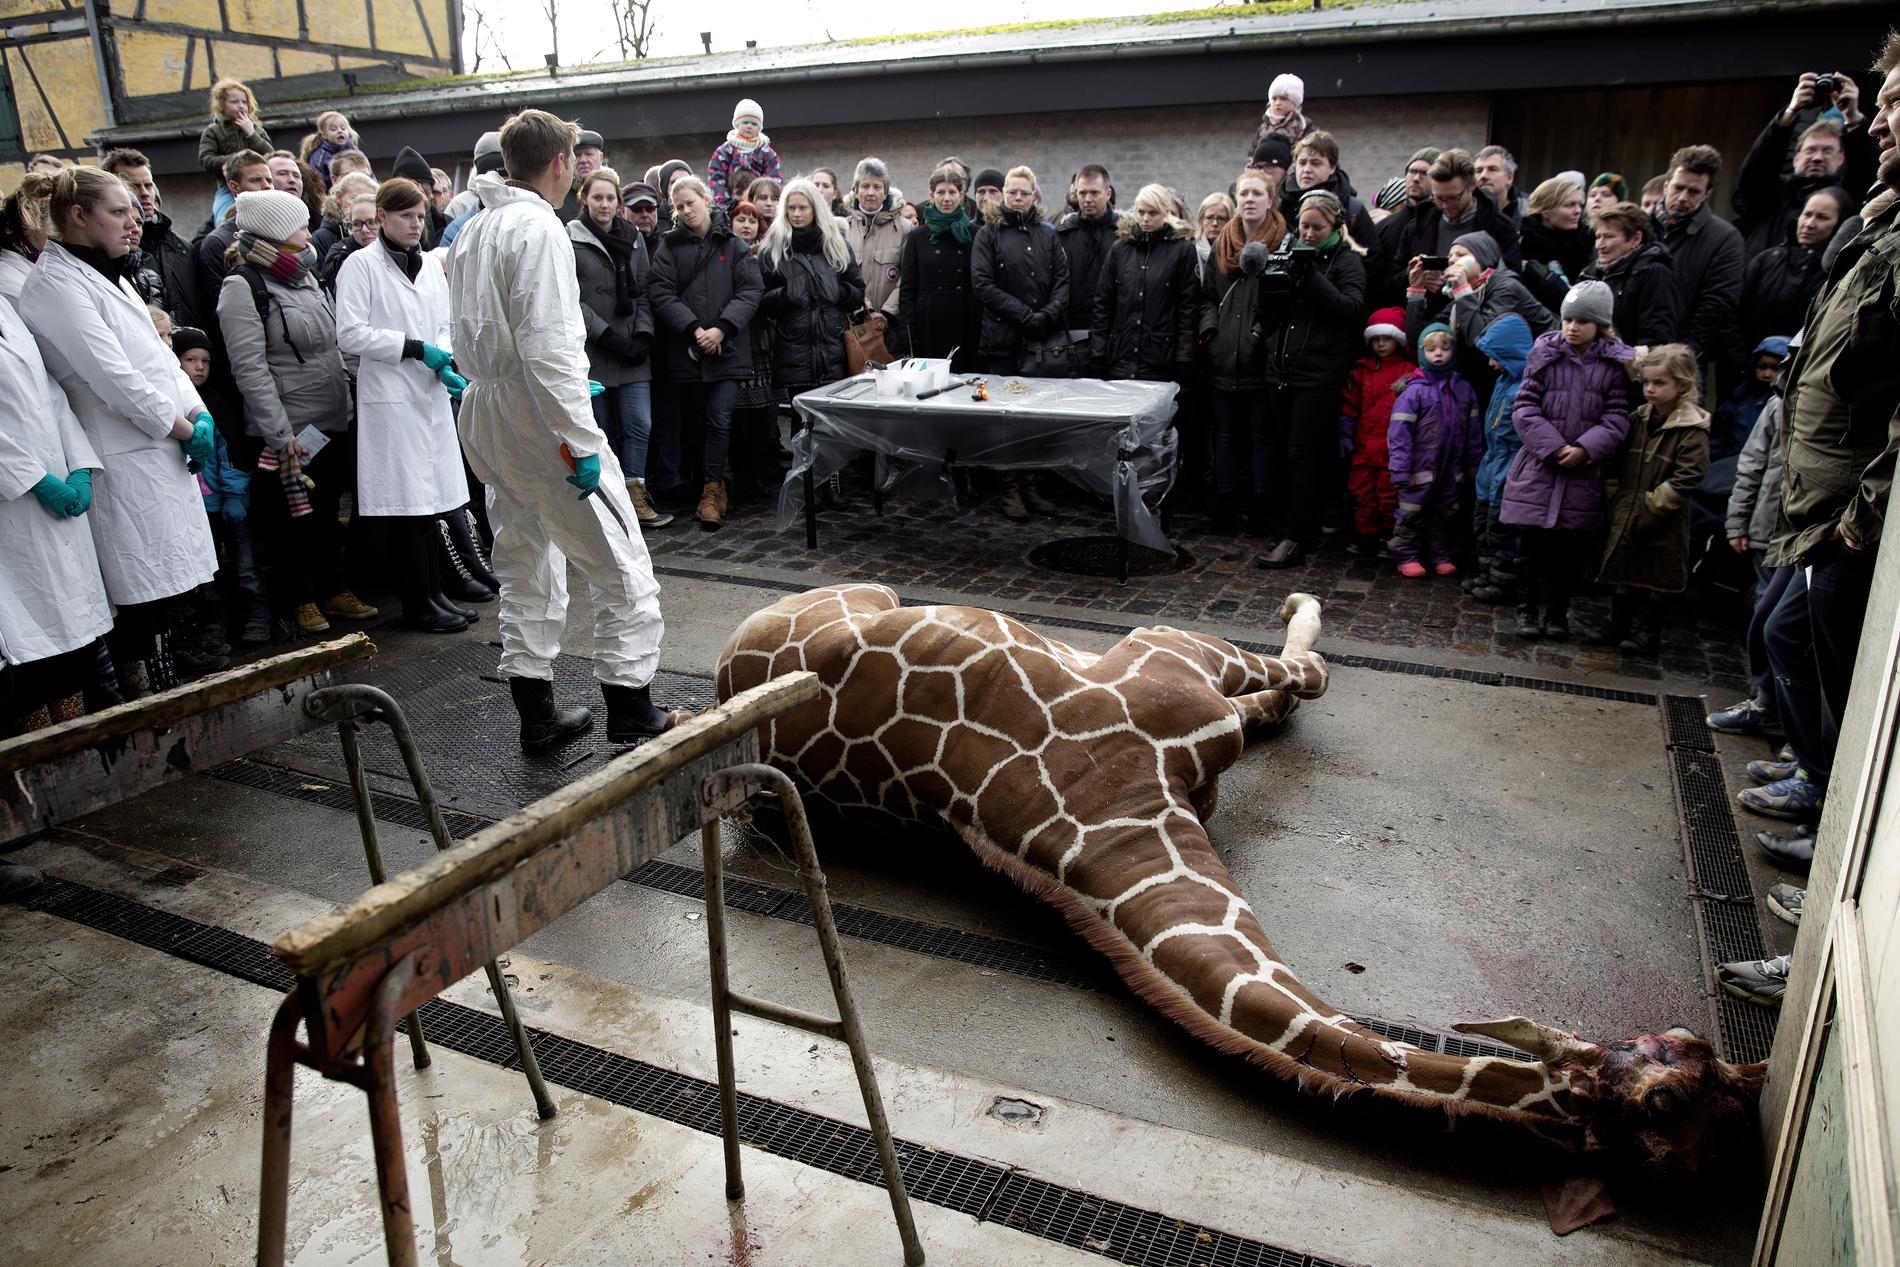 Giraffungen Marius dödades och slaktades inför besökarna på Köpenhamns Zoo. Men hur vi behandlar djur säger mycket om bristen på medmänsklighet i samhället, menar debattören.